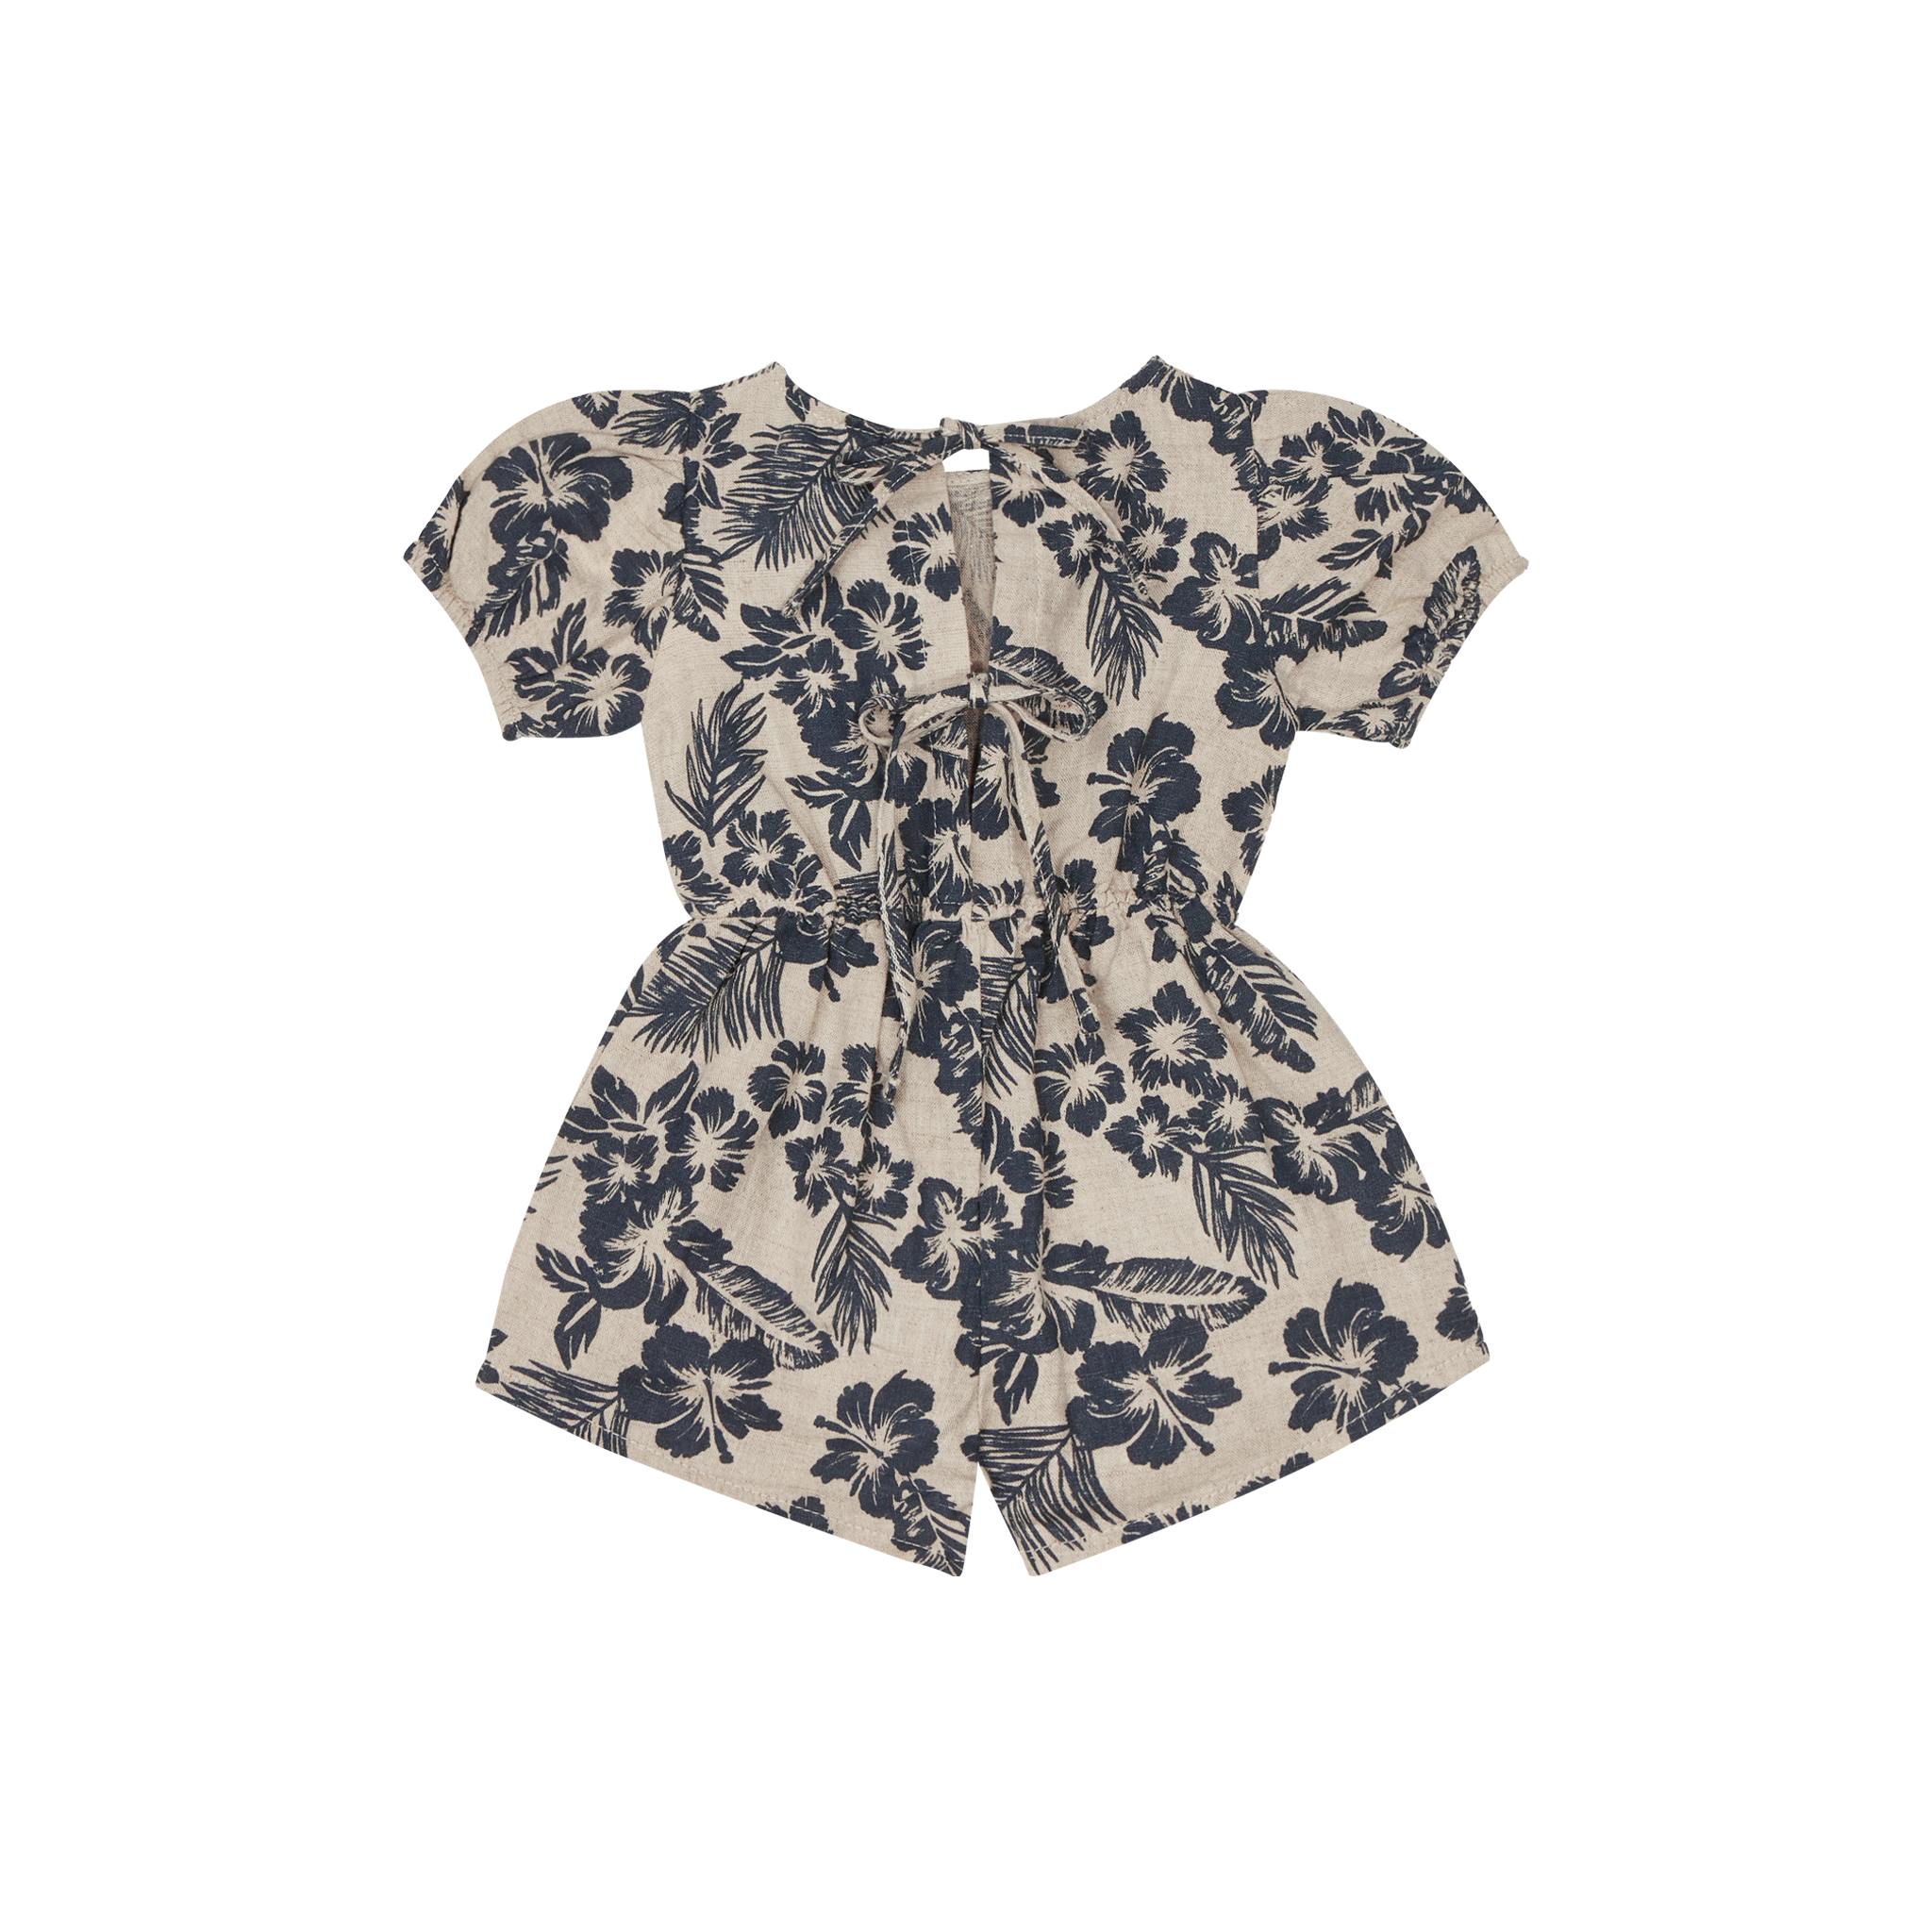 The New Society Hibiscus Baby Short Romper Navy / Sand Linen Cotton | BIEN BIEN bienbienshop.com